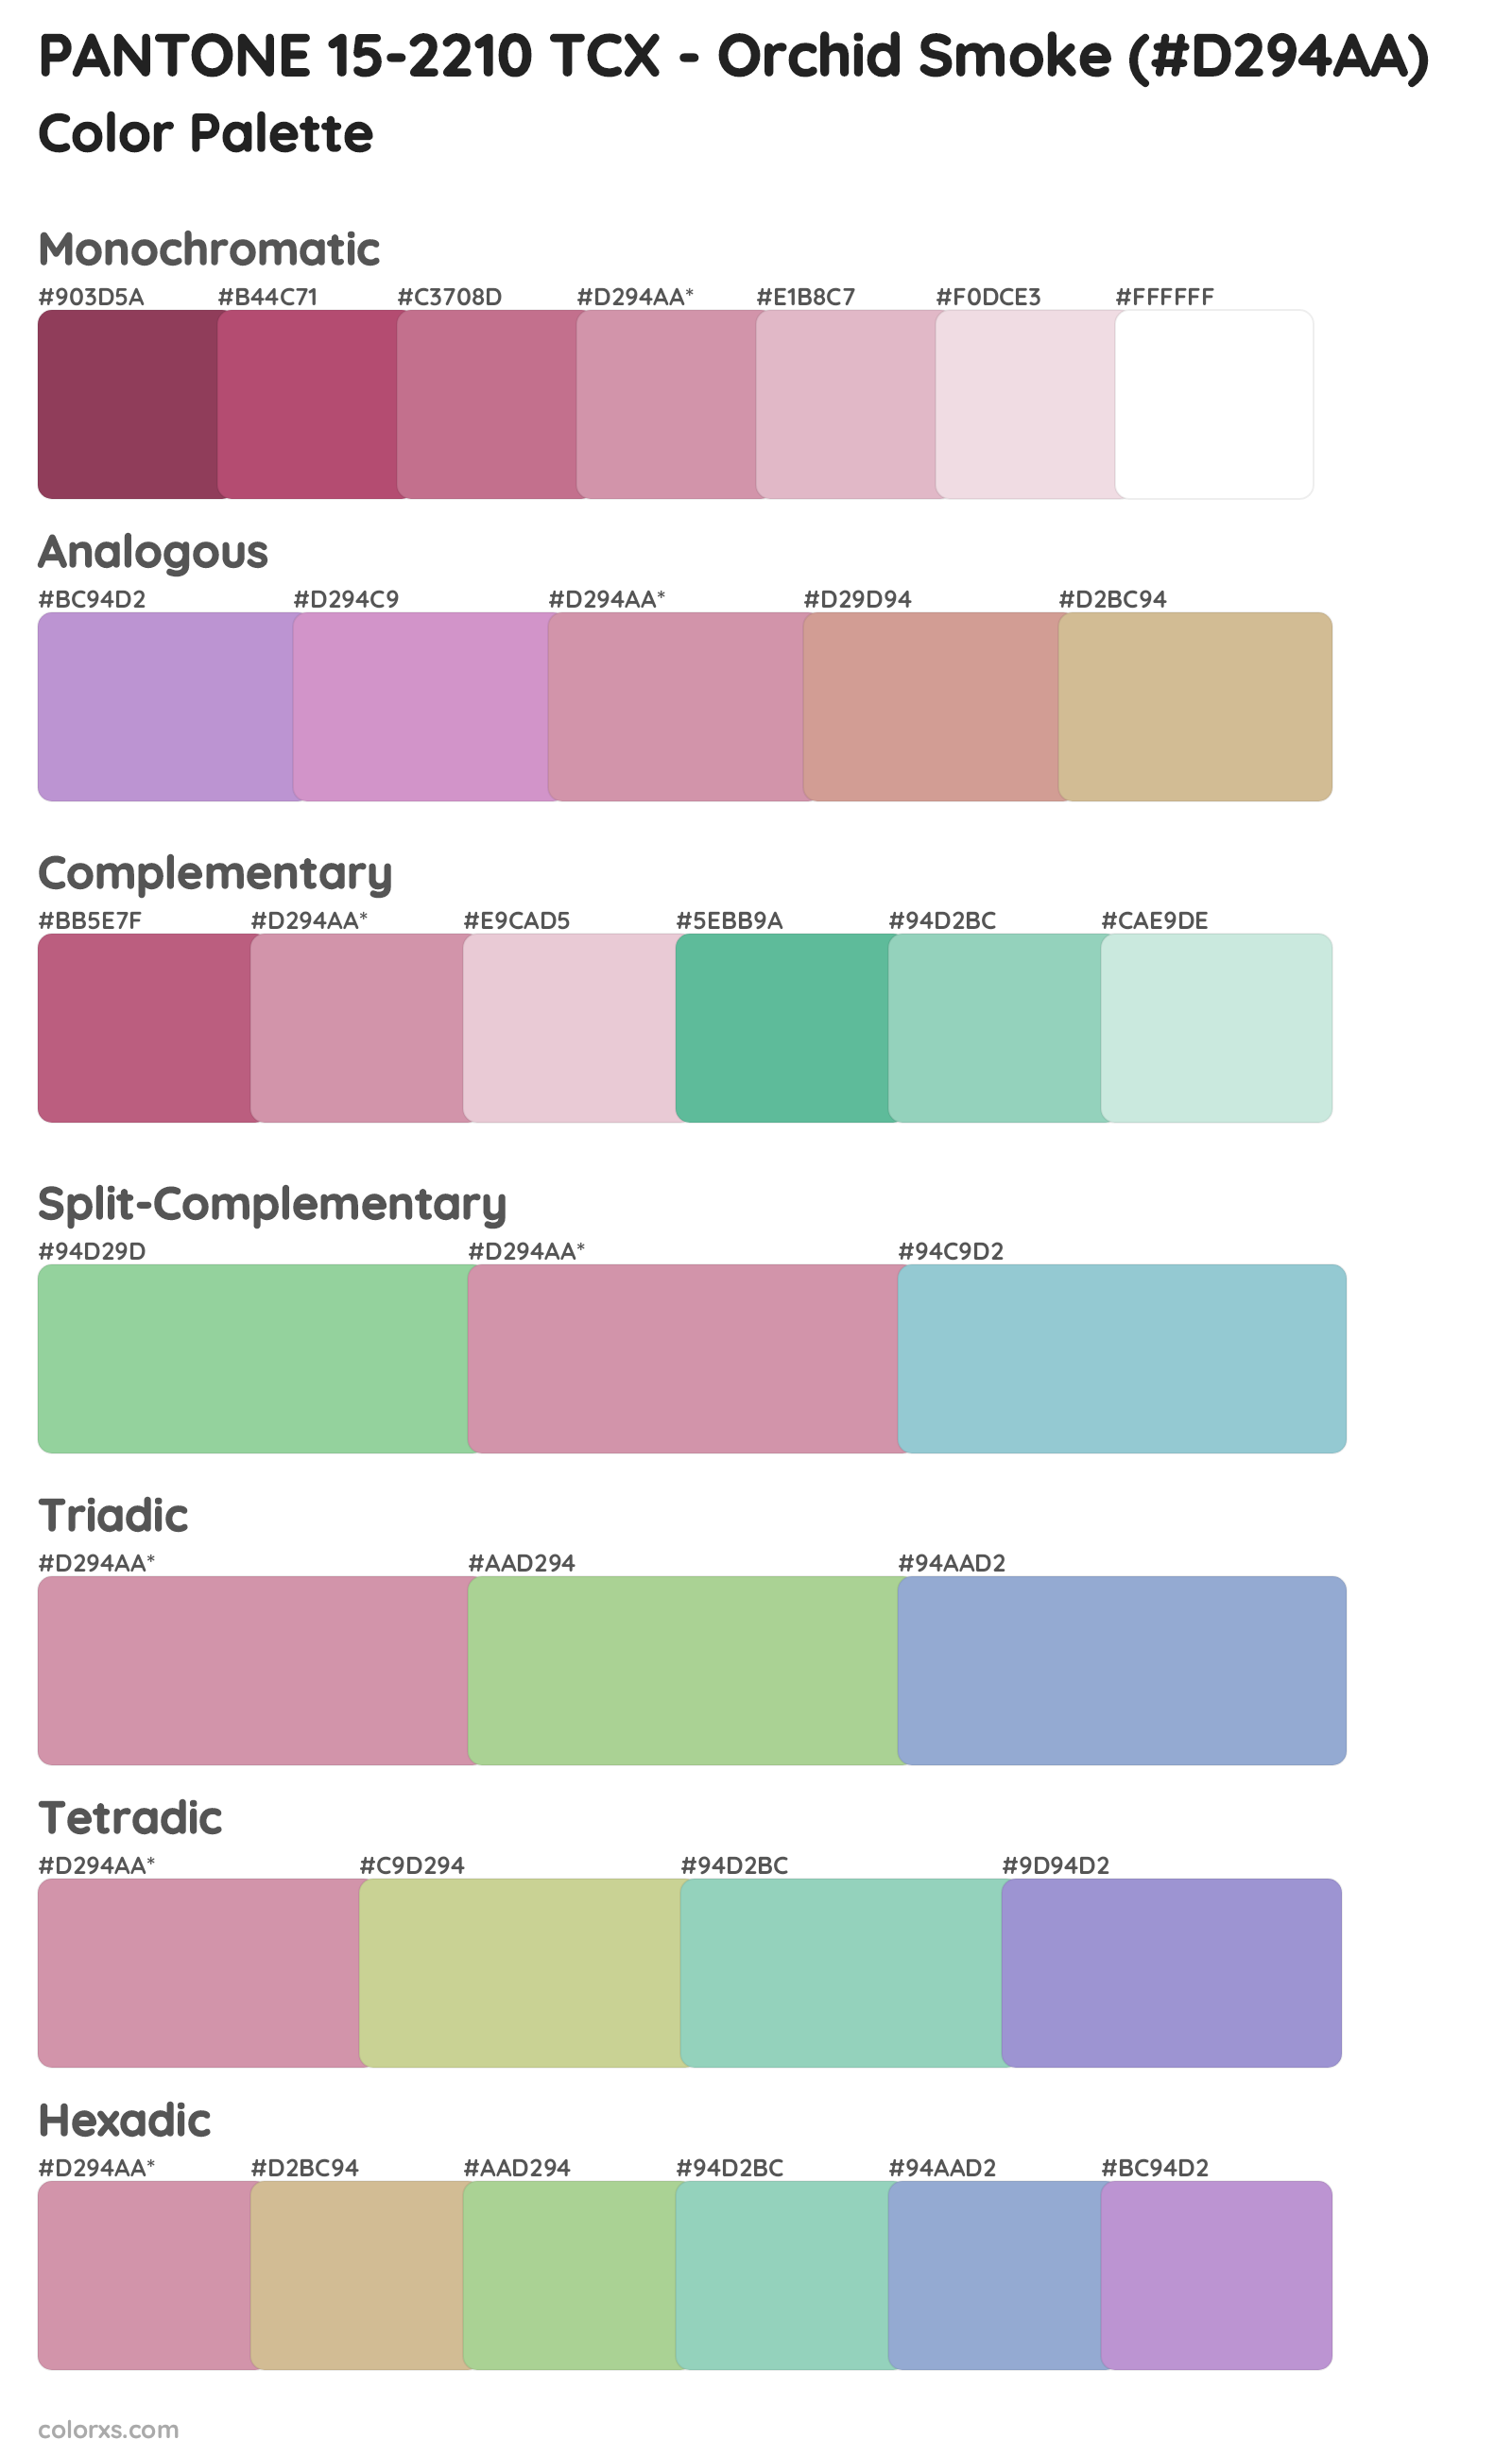 PANTONE 15-2210 TCX - Orchid Smoke Color Scheme Palettes